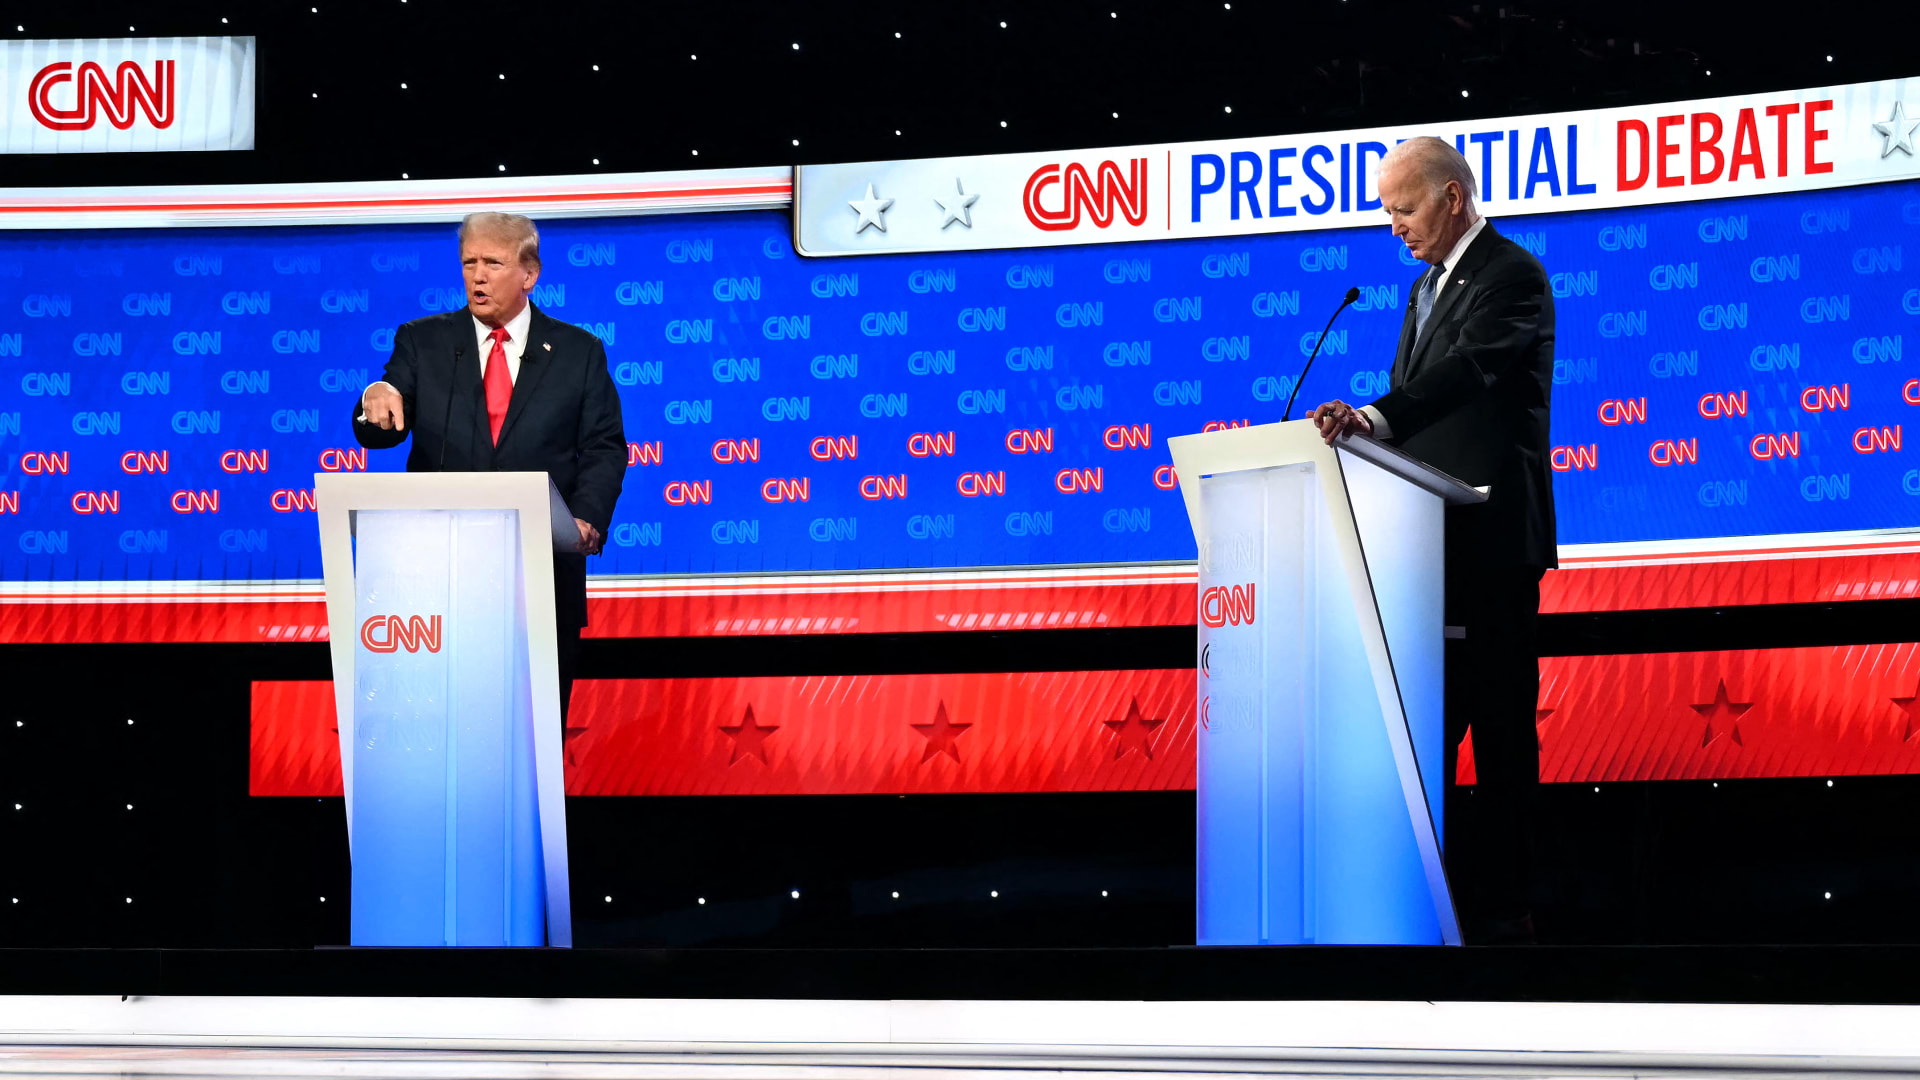 شاهد كيف تراشق ترامب وبايدن خلال المناظرة الرئاسية التي بثتها CNN